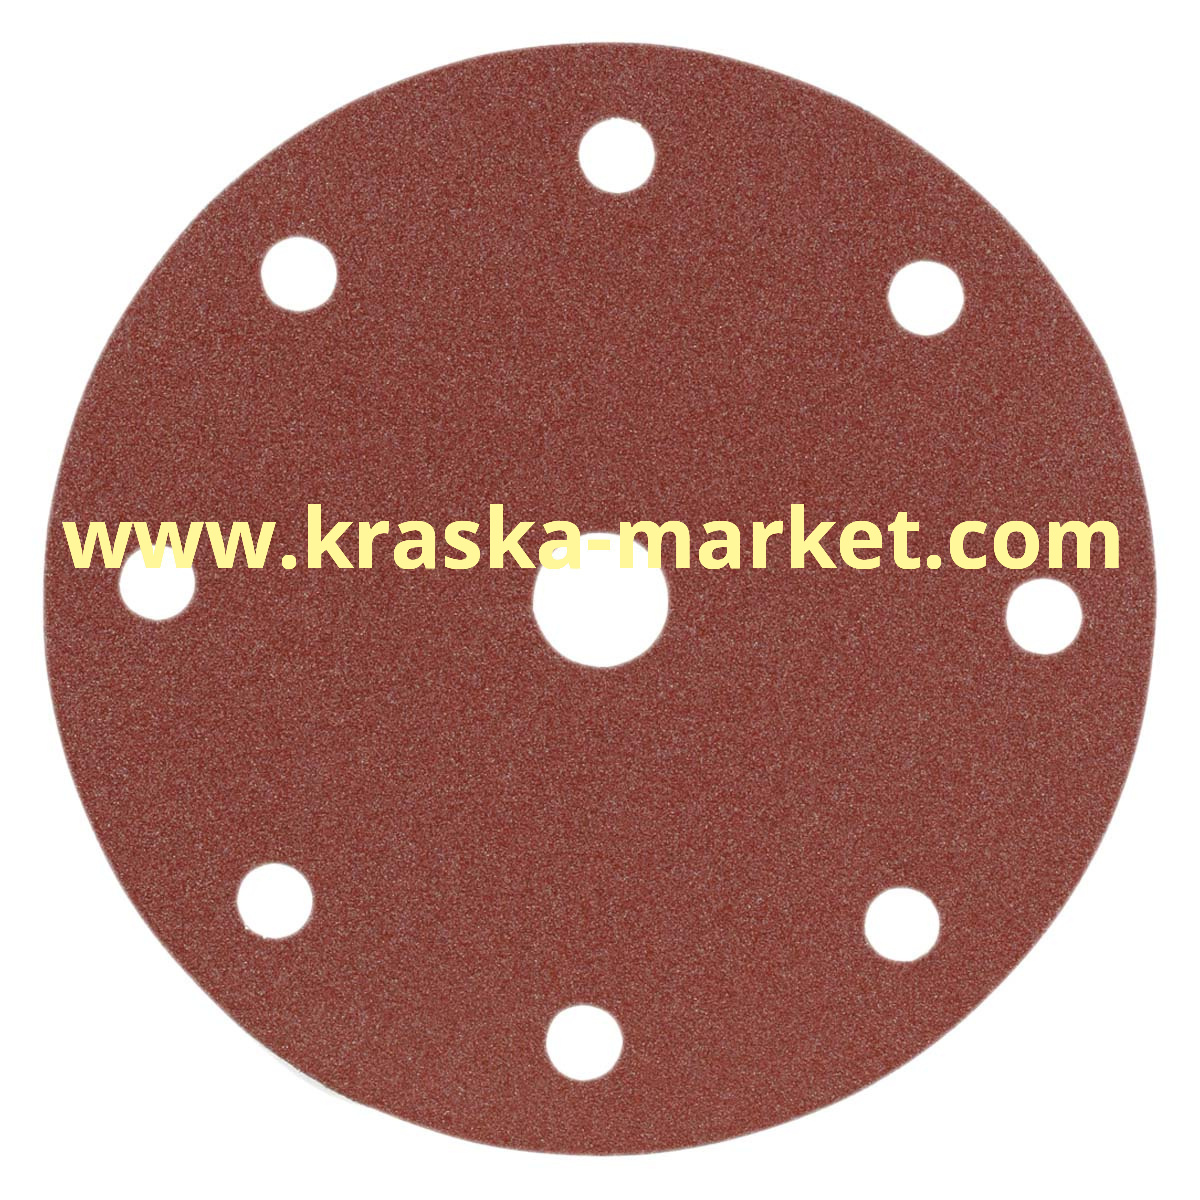 Круг абразивный, красный, 15 отверстий, Р240, 150 мм. Производитель: Indasa.